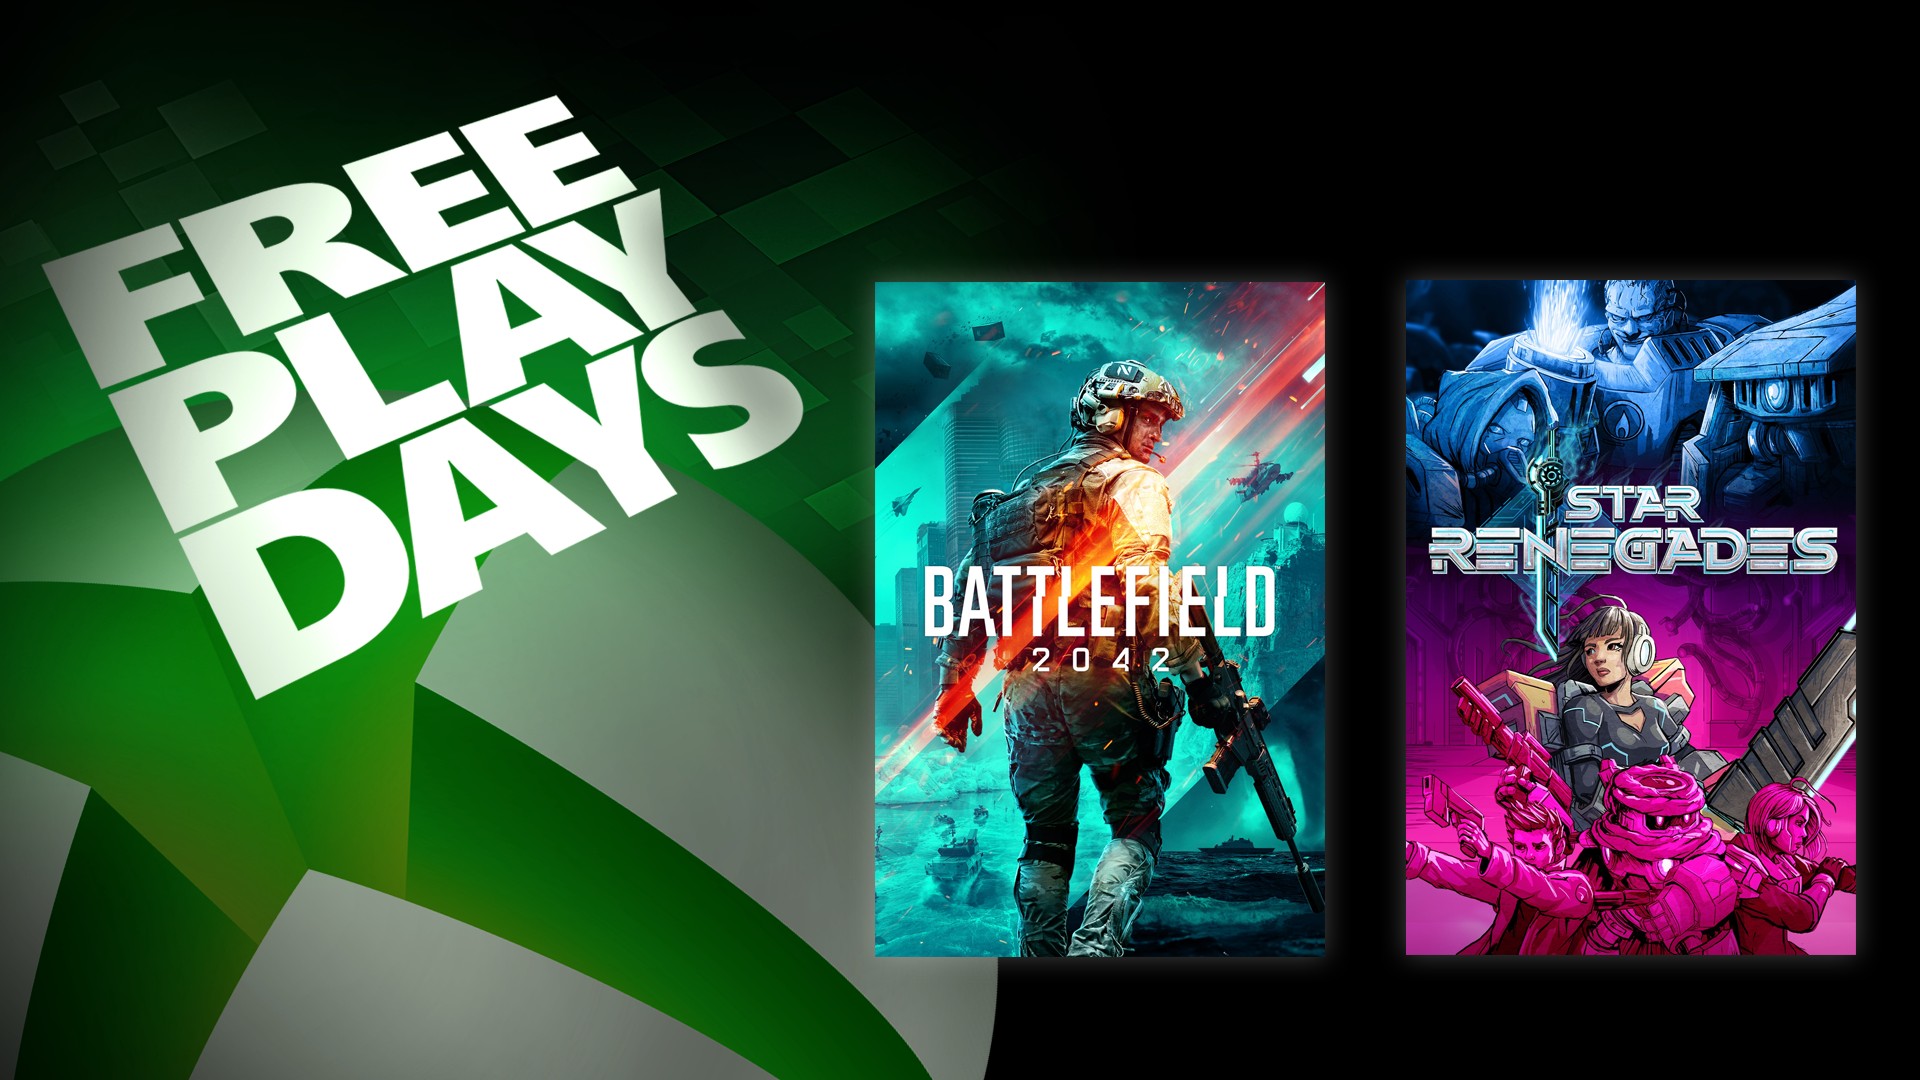 Заглавная поста про Дни бесплатной игры с обложками игр Battlefield 2042 и Star Renegades